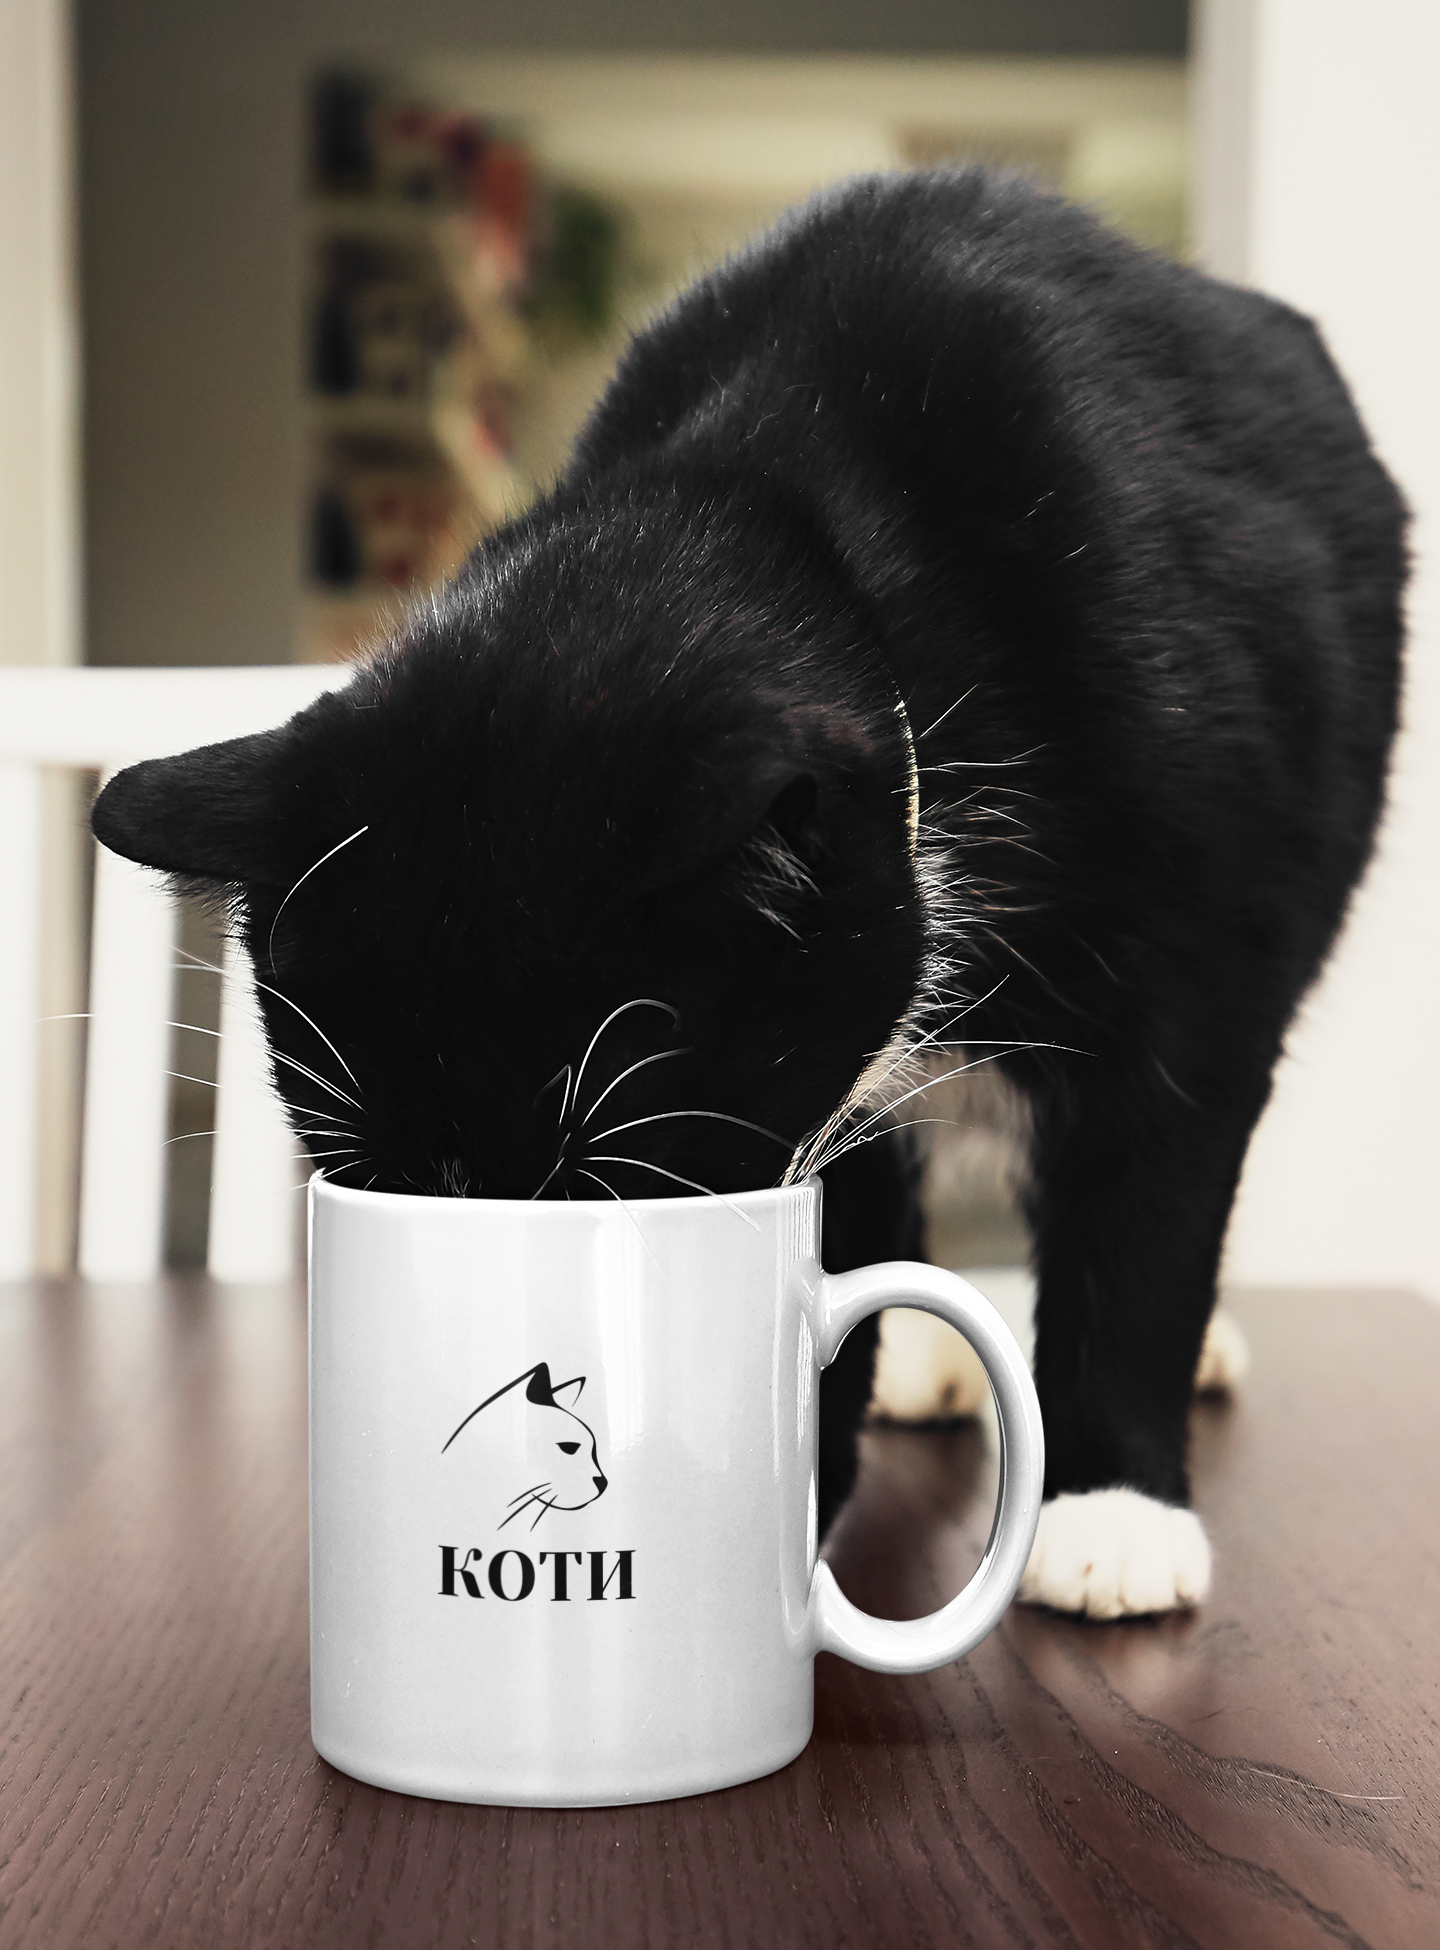 Чаша “Коти” - с черната котка